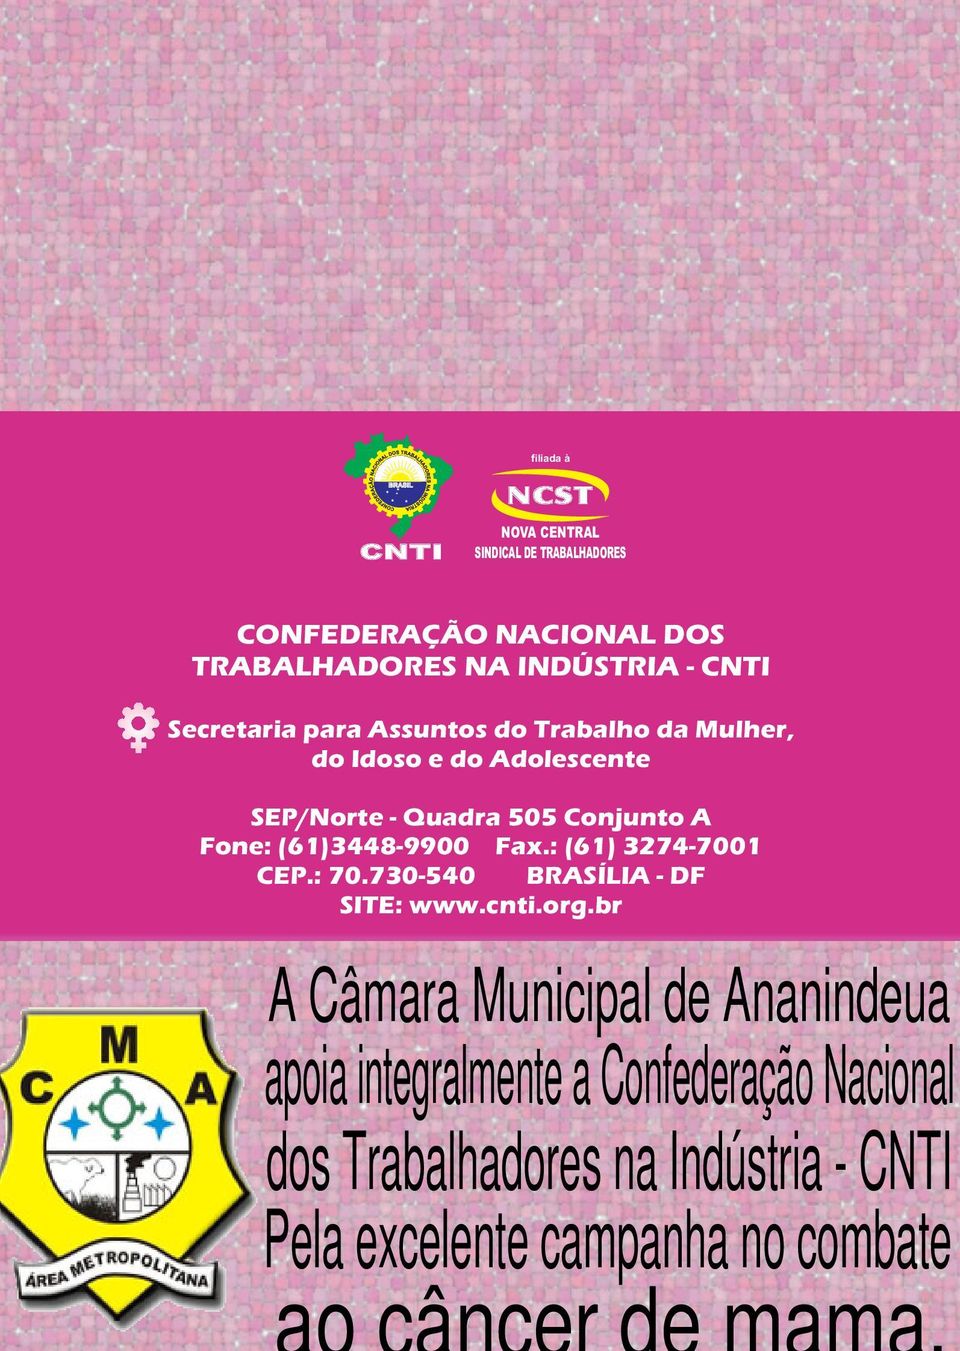 Fone: (61)3448-9900 Fax.: (61) 3274-7001 CEP.: 70.730-540 BRASÍLIA - DF SITE: www.cnti.org.